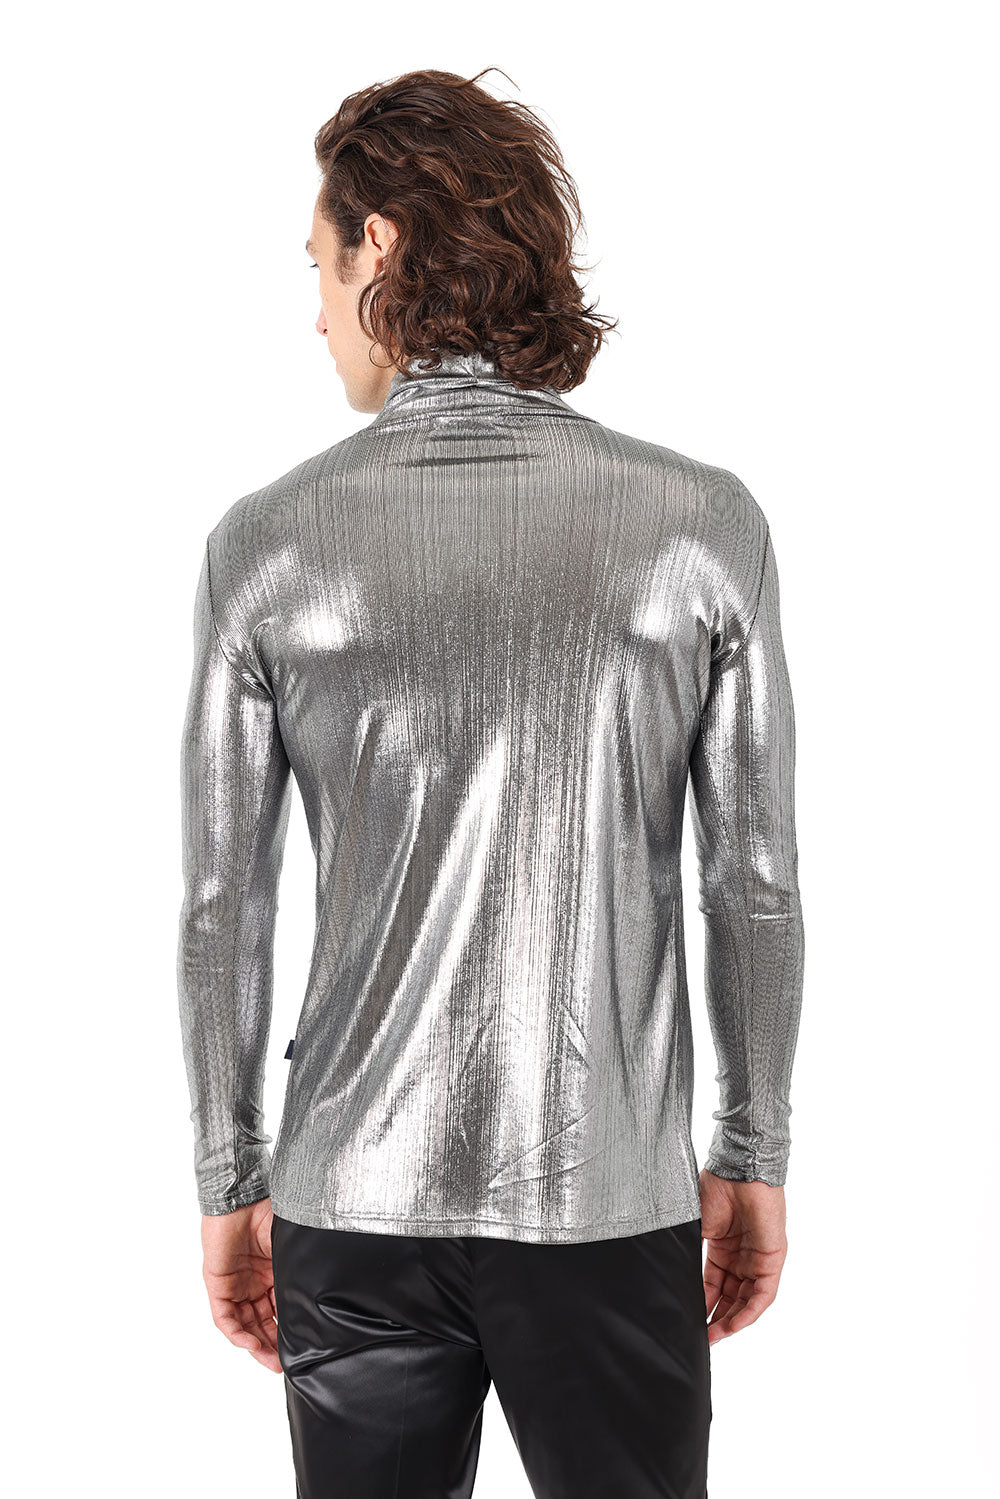 Barabas Wholesale Men's Metallic Luxury Long Sleeve Sweater 2KT1000 Silver